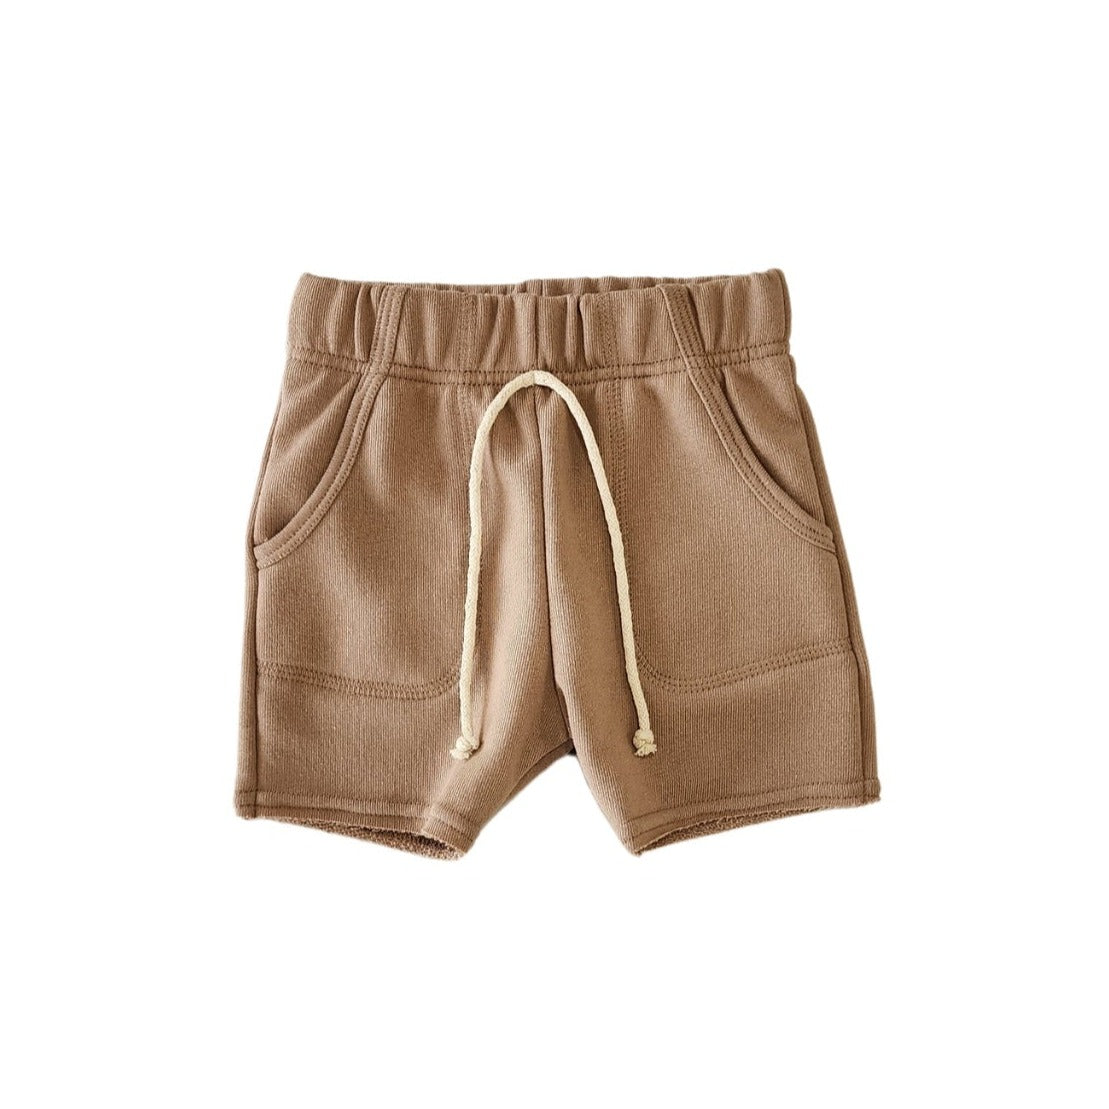 sk8 shorts - cocoa